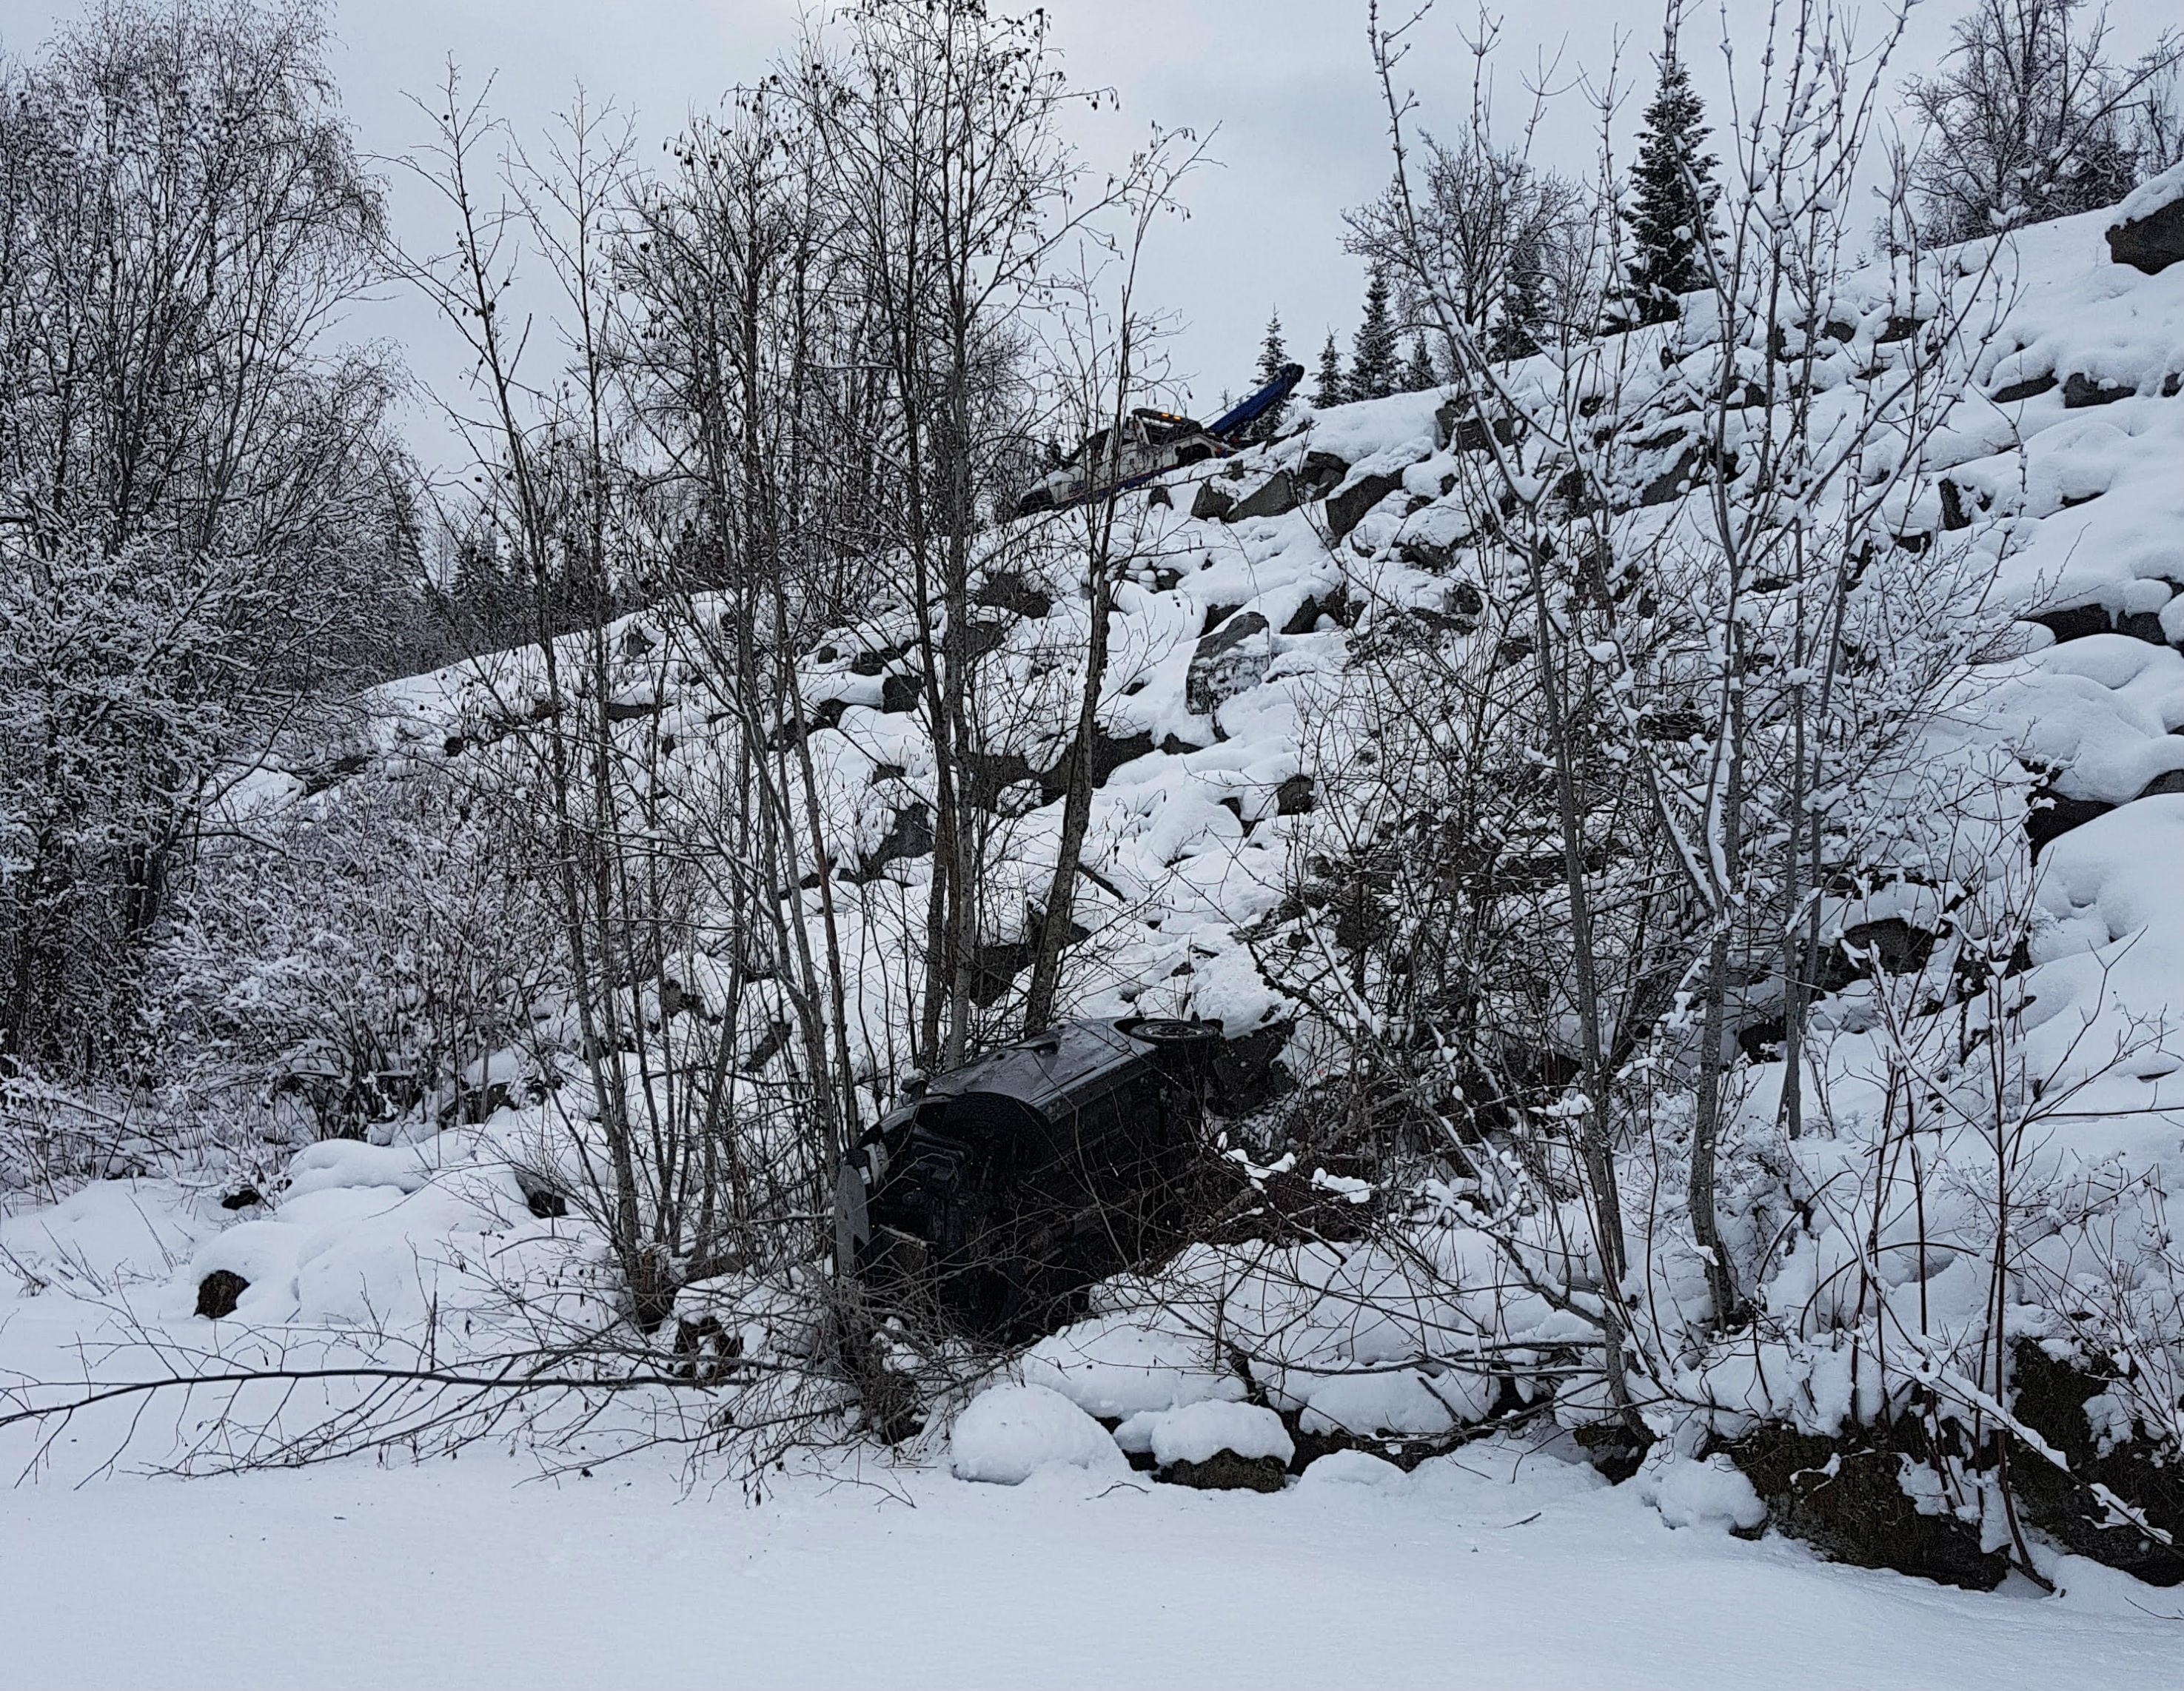 UPDATED: Snowfall warning continues for Paulson Summit to Kootenay Pass